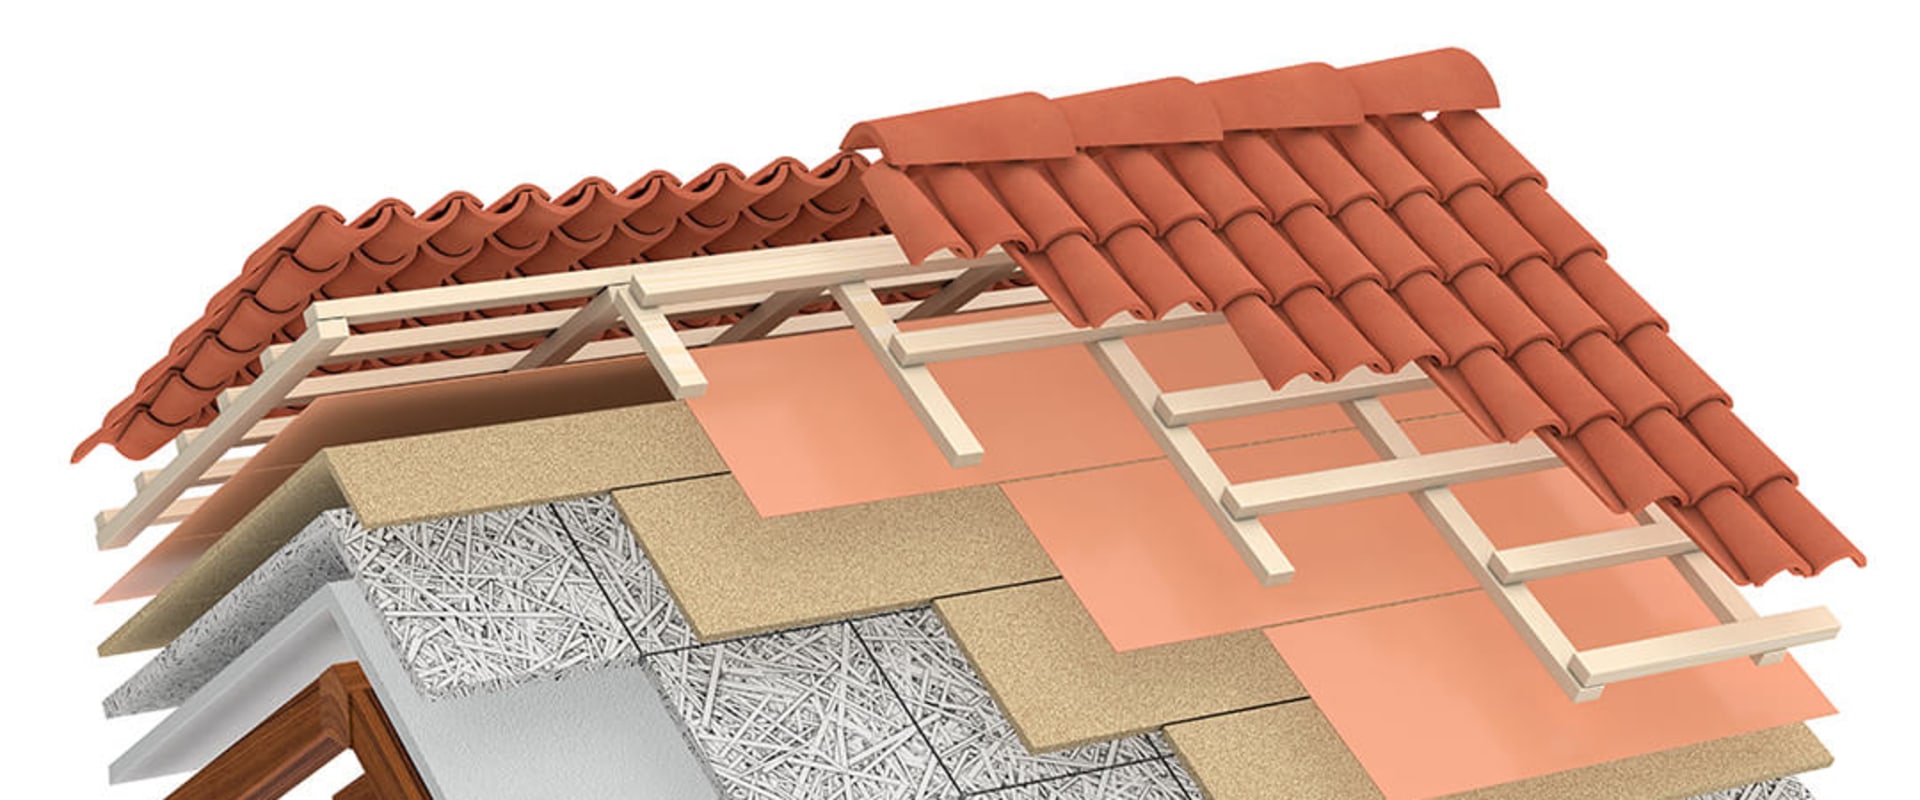 Welke vorm van isolatie wordt gebruikt in daksystemen?